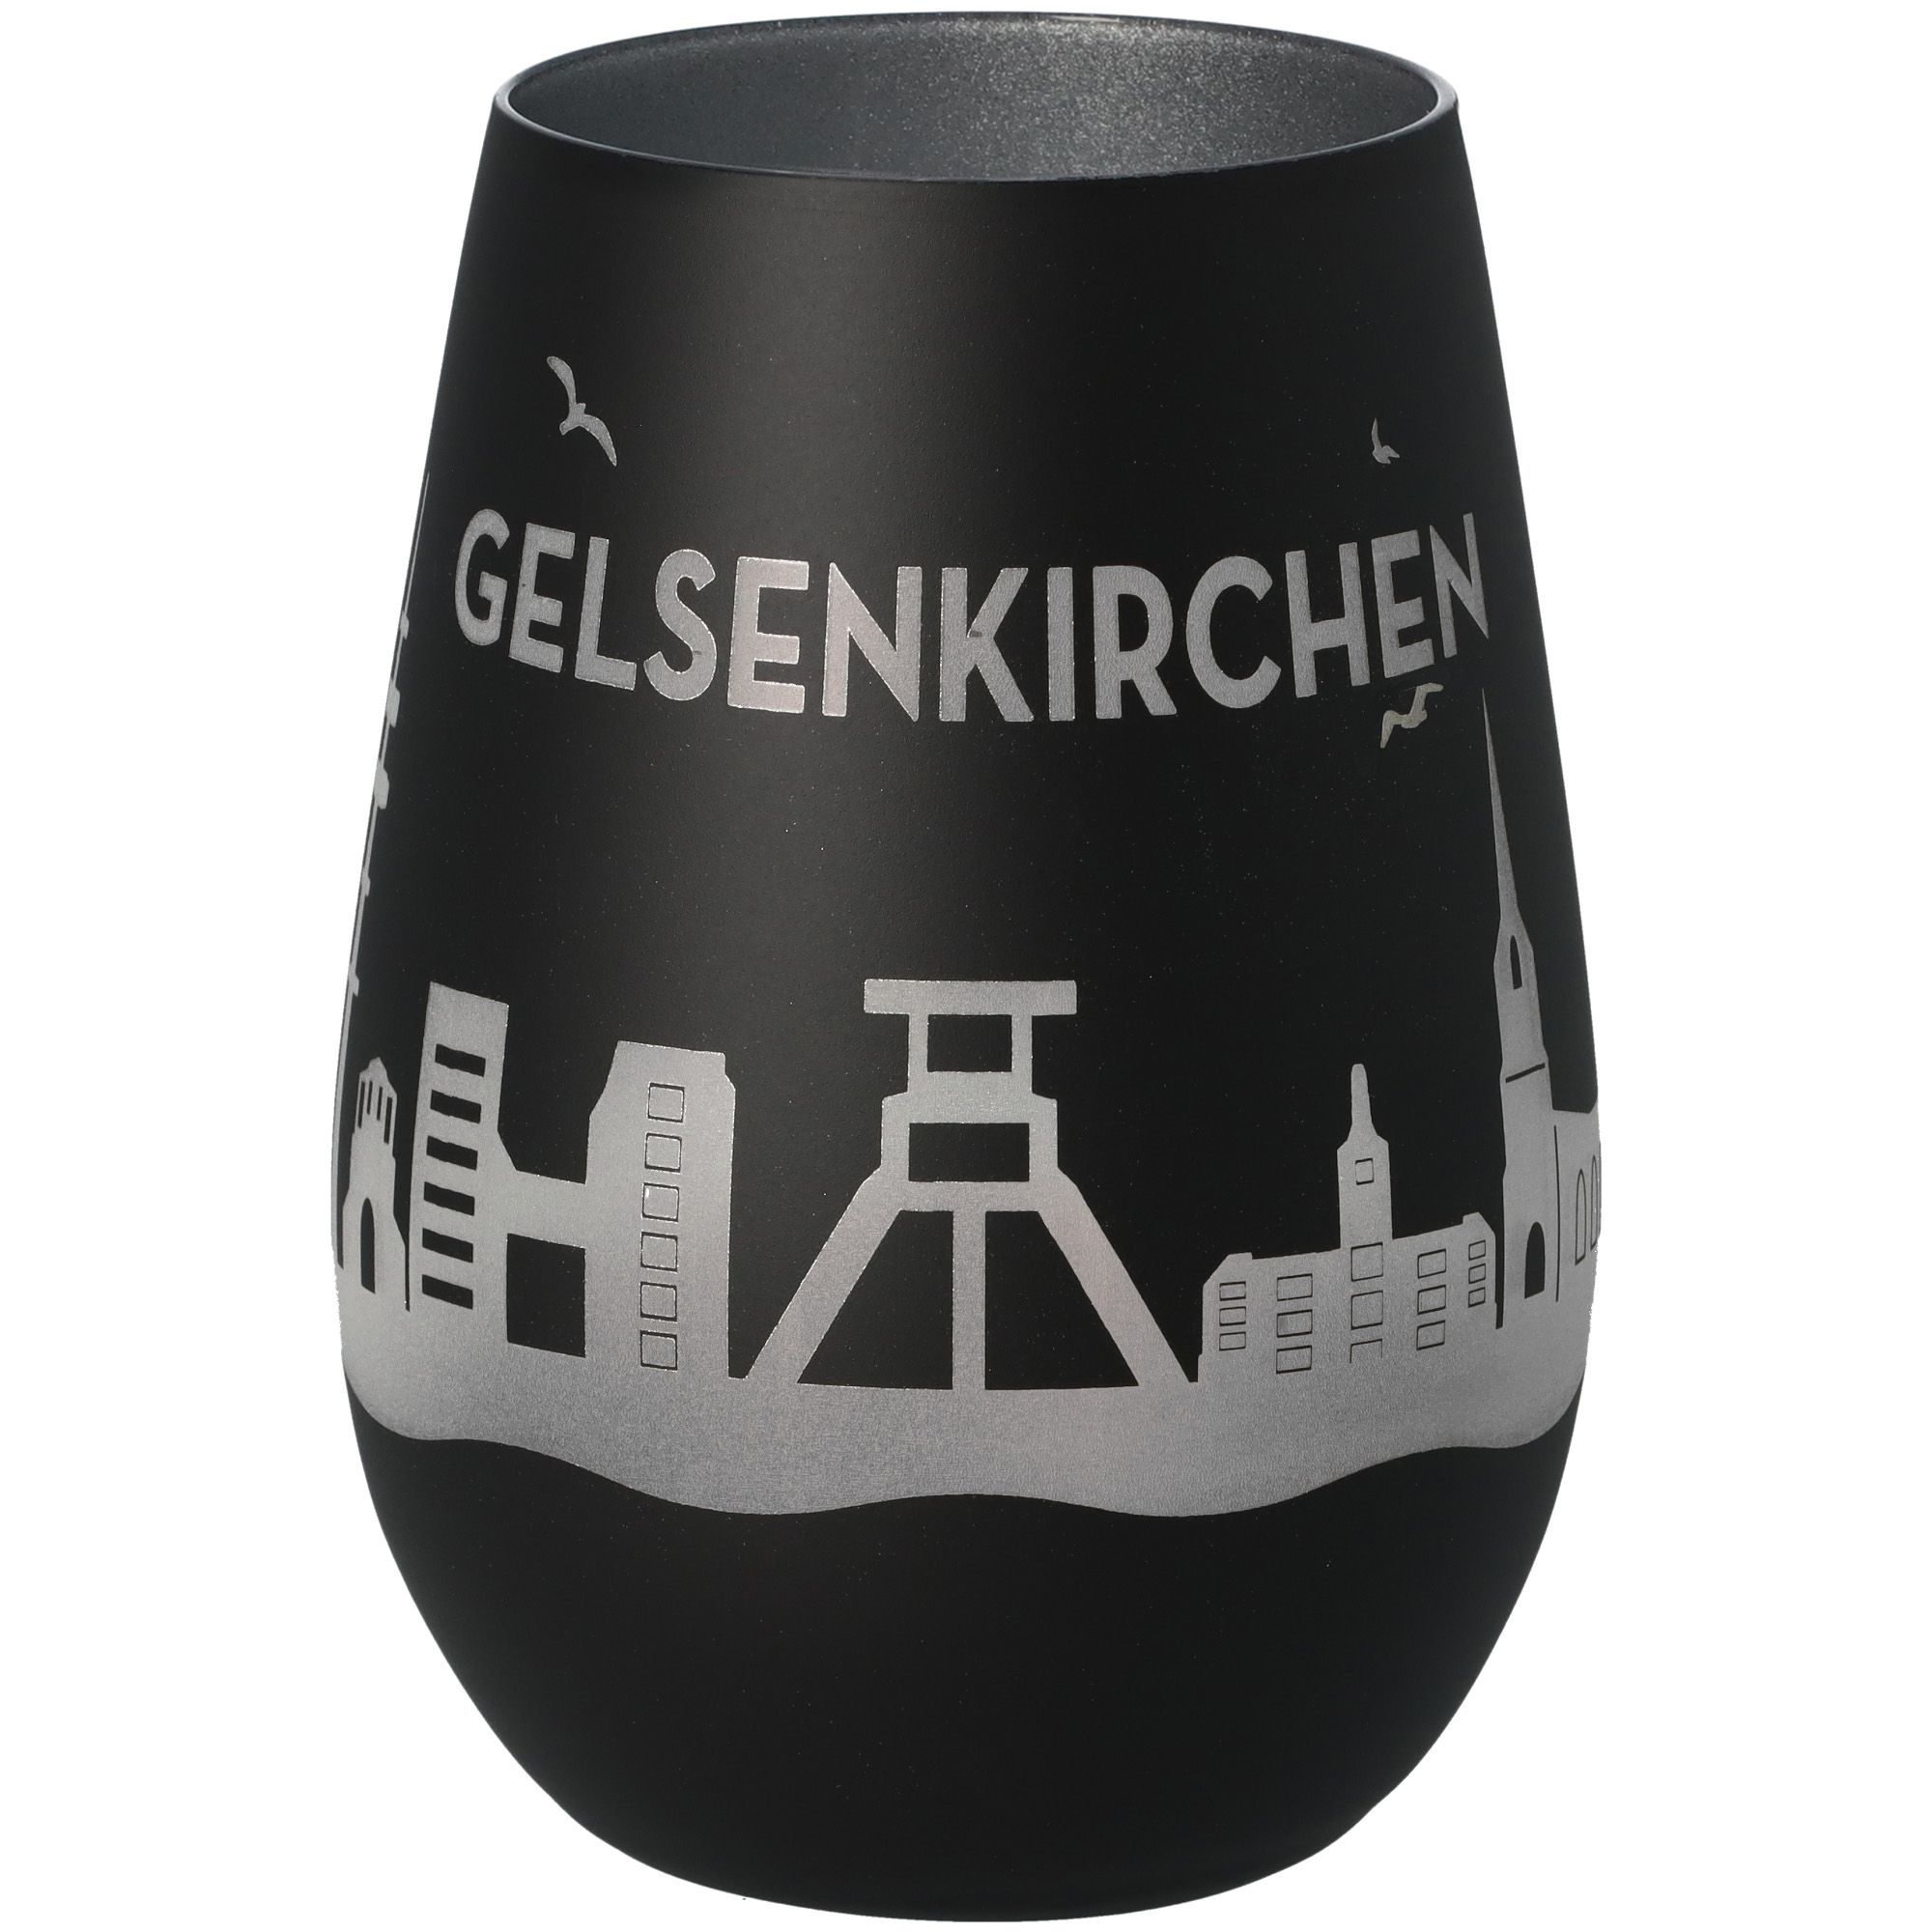 Windlicht Skyline Gelsenkirchen Schwarz/Silber